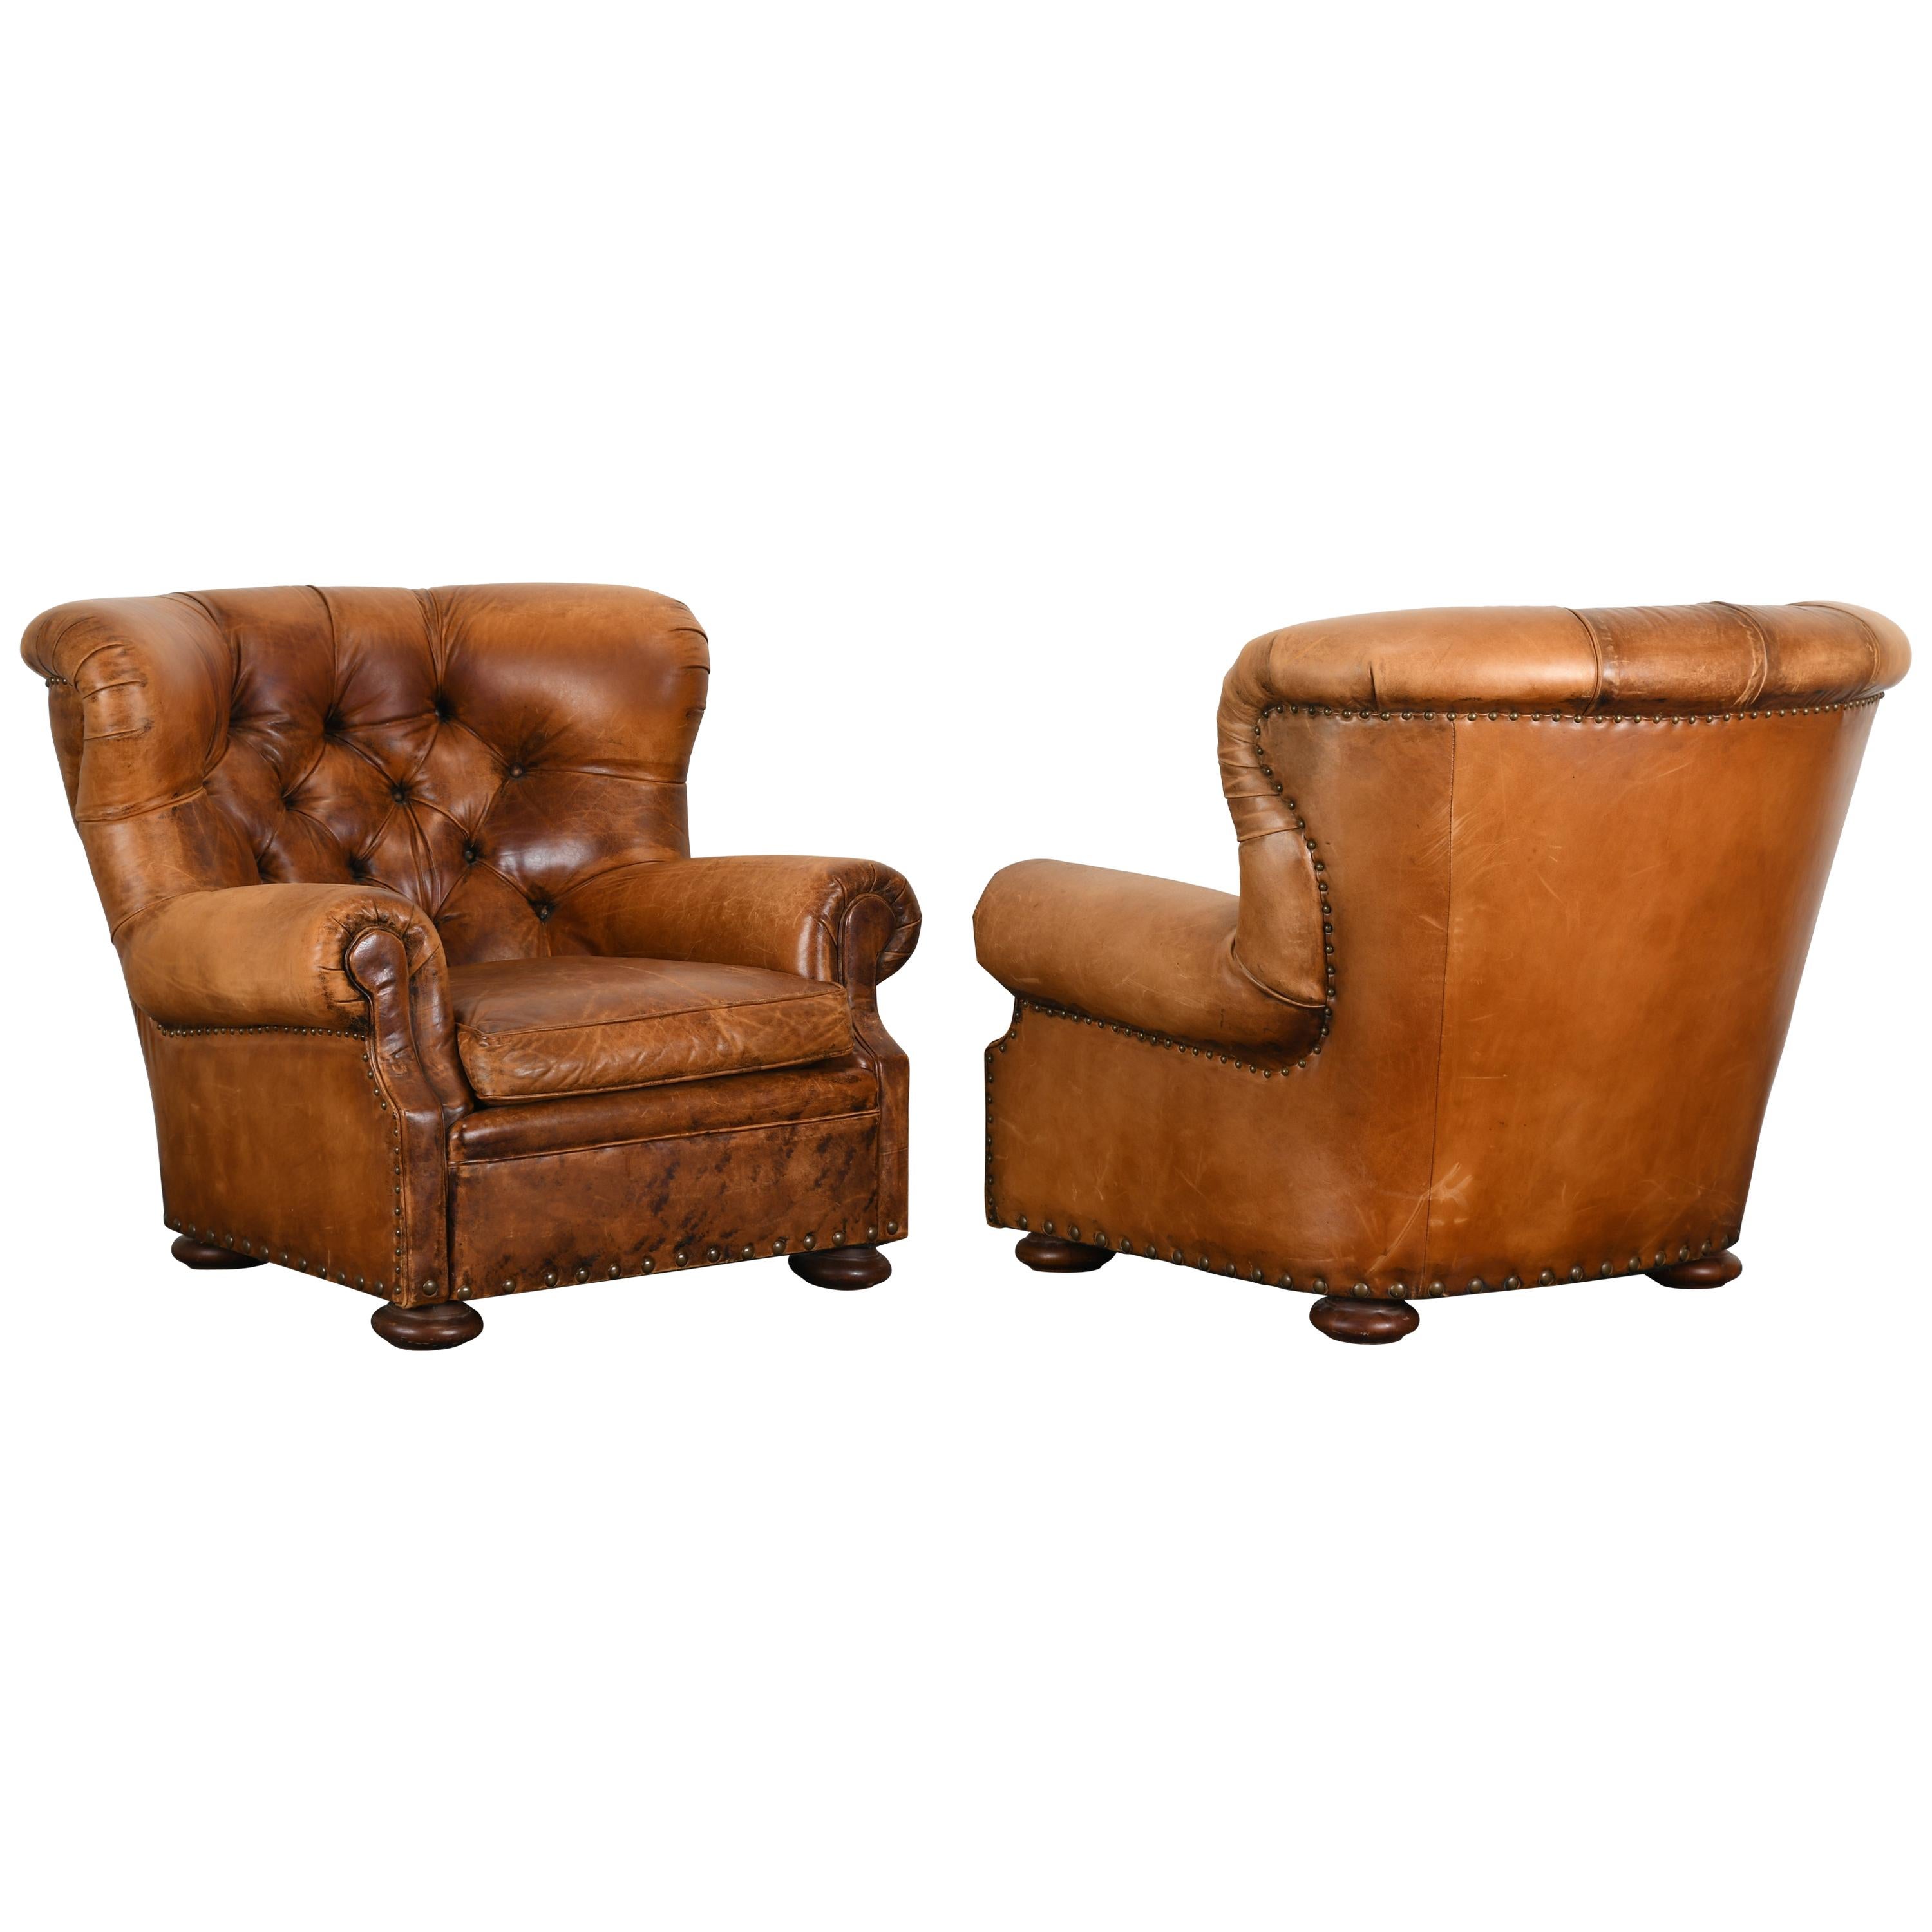 Pair of Ralph Lauren "Writer's" Chairs, 20th Century